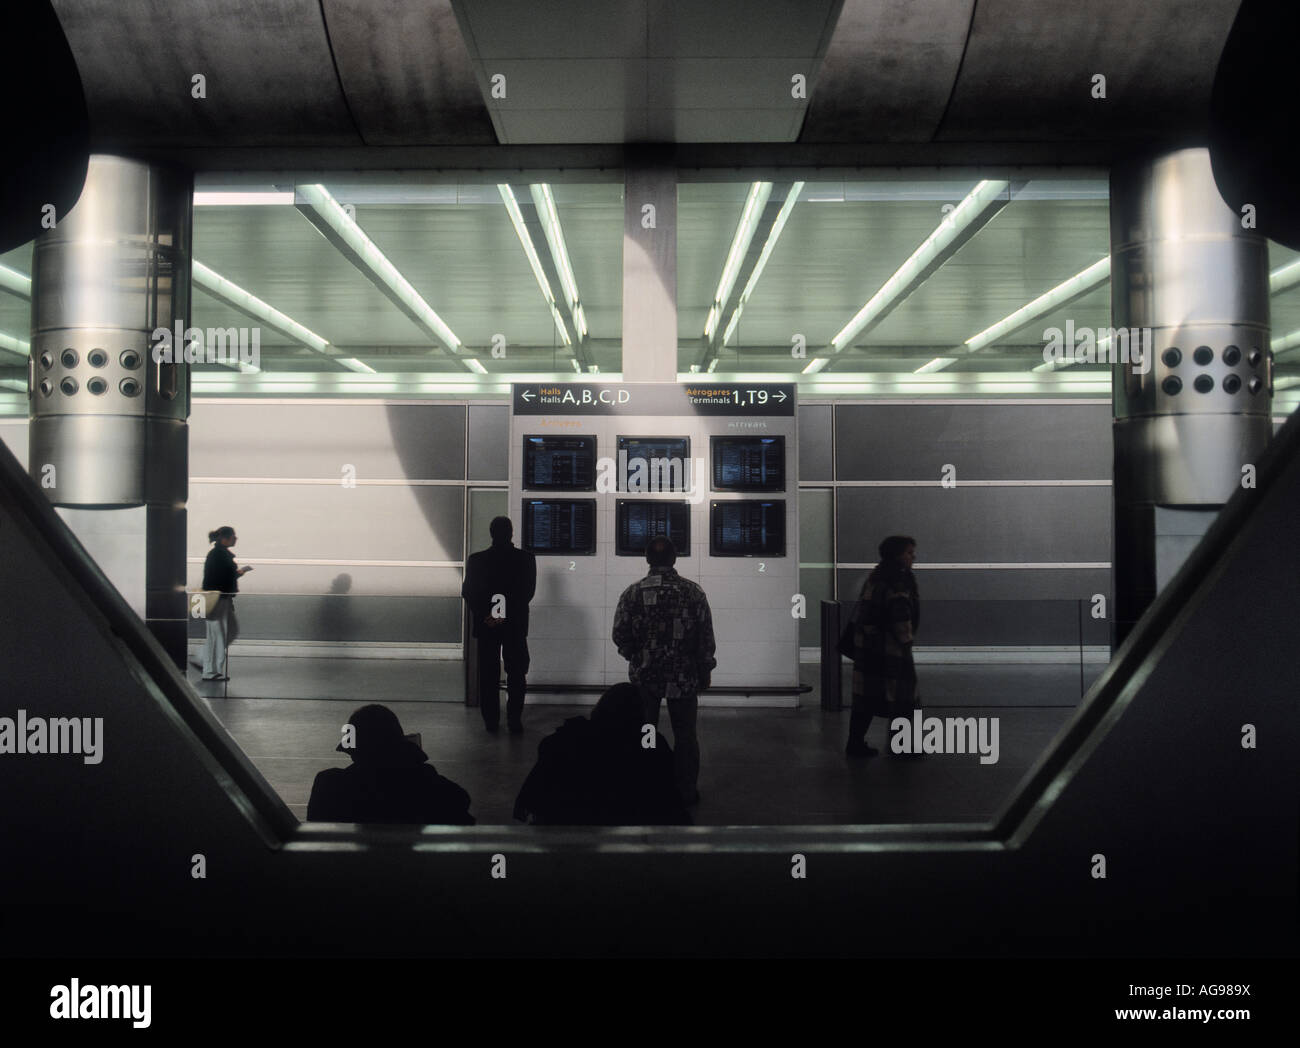 Personen suchen in Abfahrt Monitore am Flughafen. Paris, Frankreich. Mittlere-Filmkorn sichtbar. Stockfoto